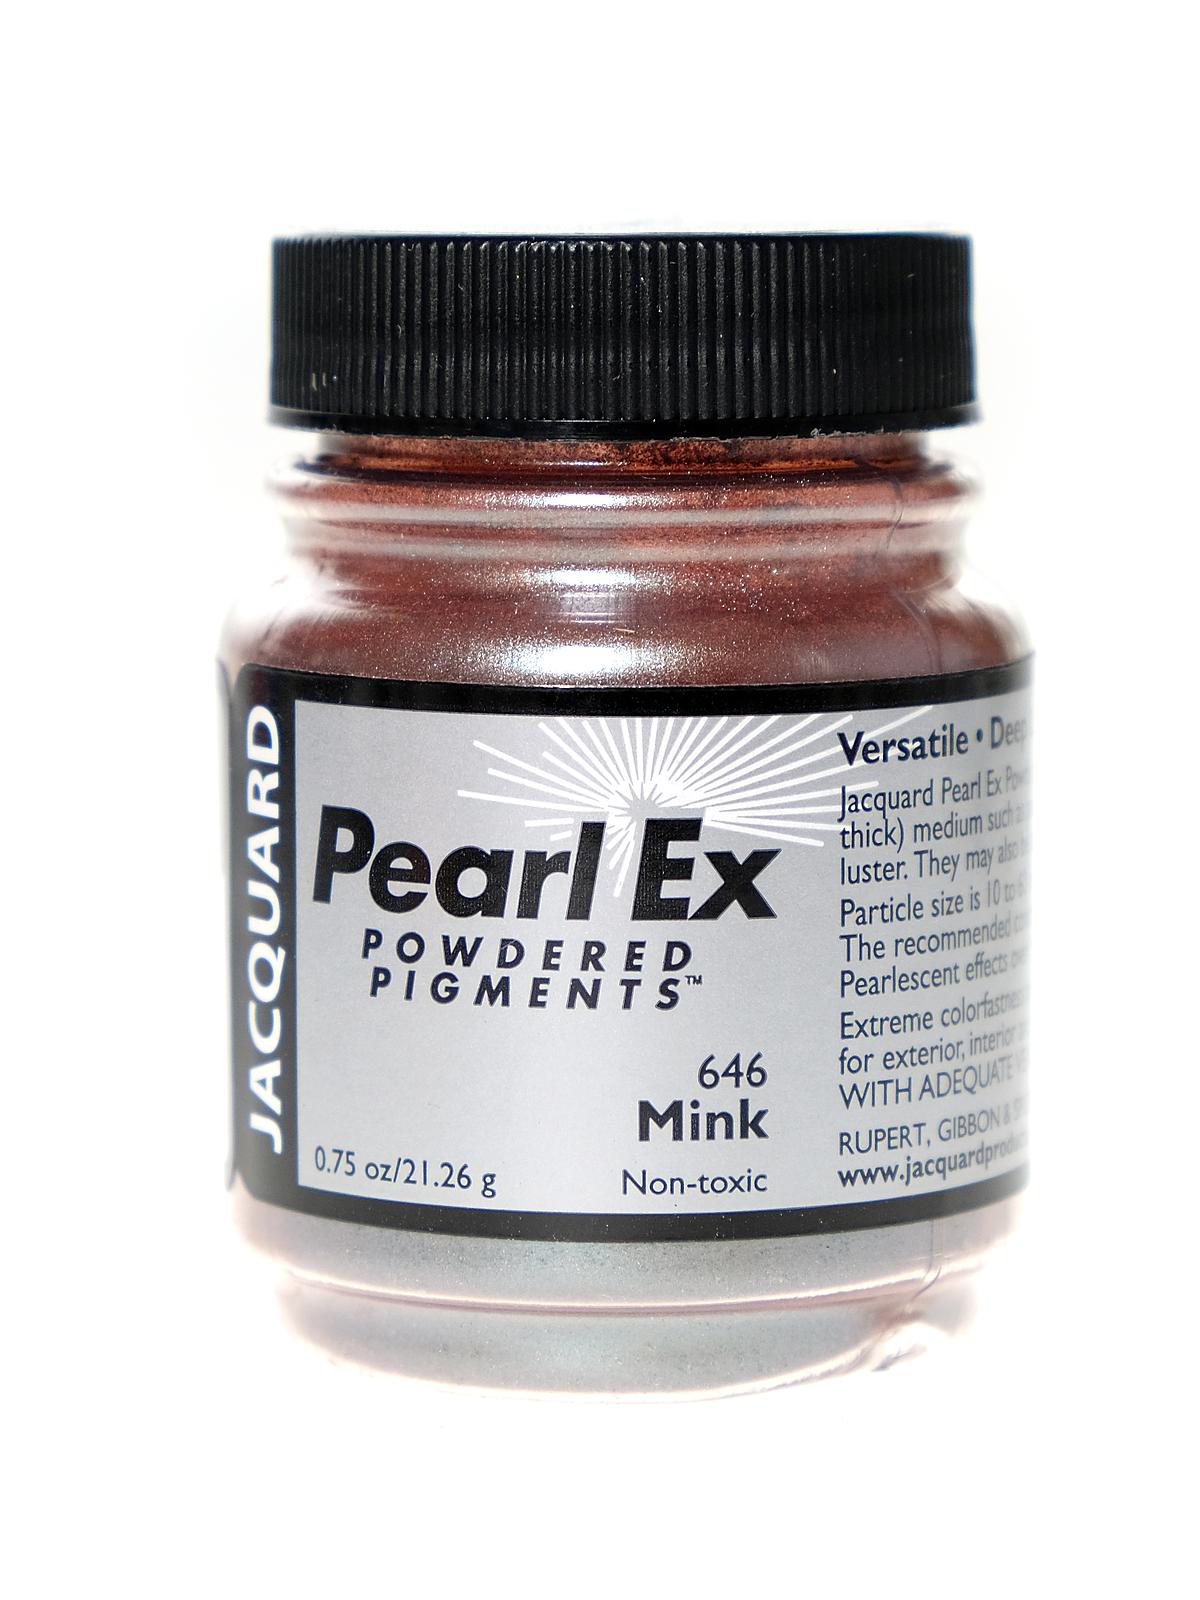 Pearl Ex Powdered Pigments Mink 0.75 Oz.